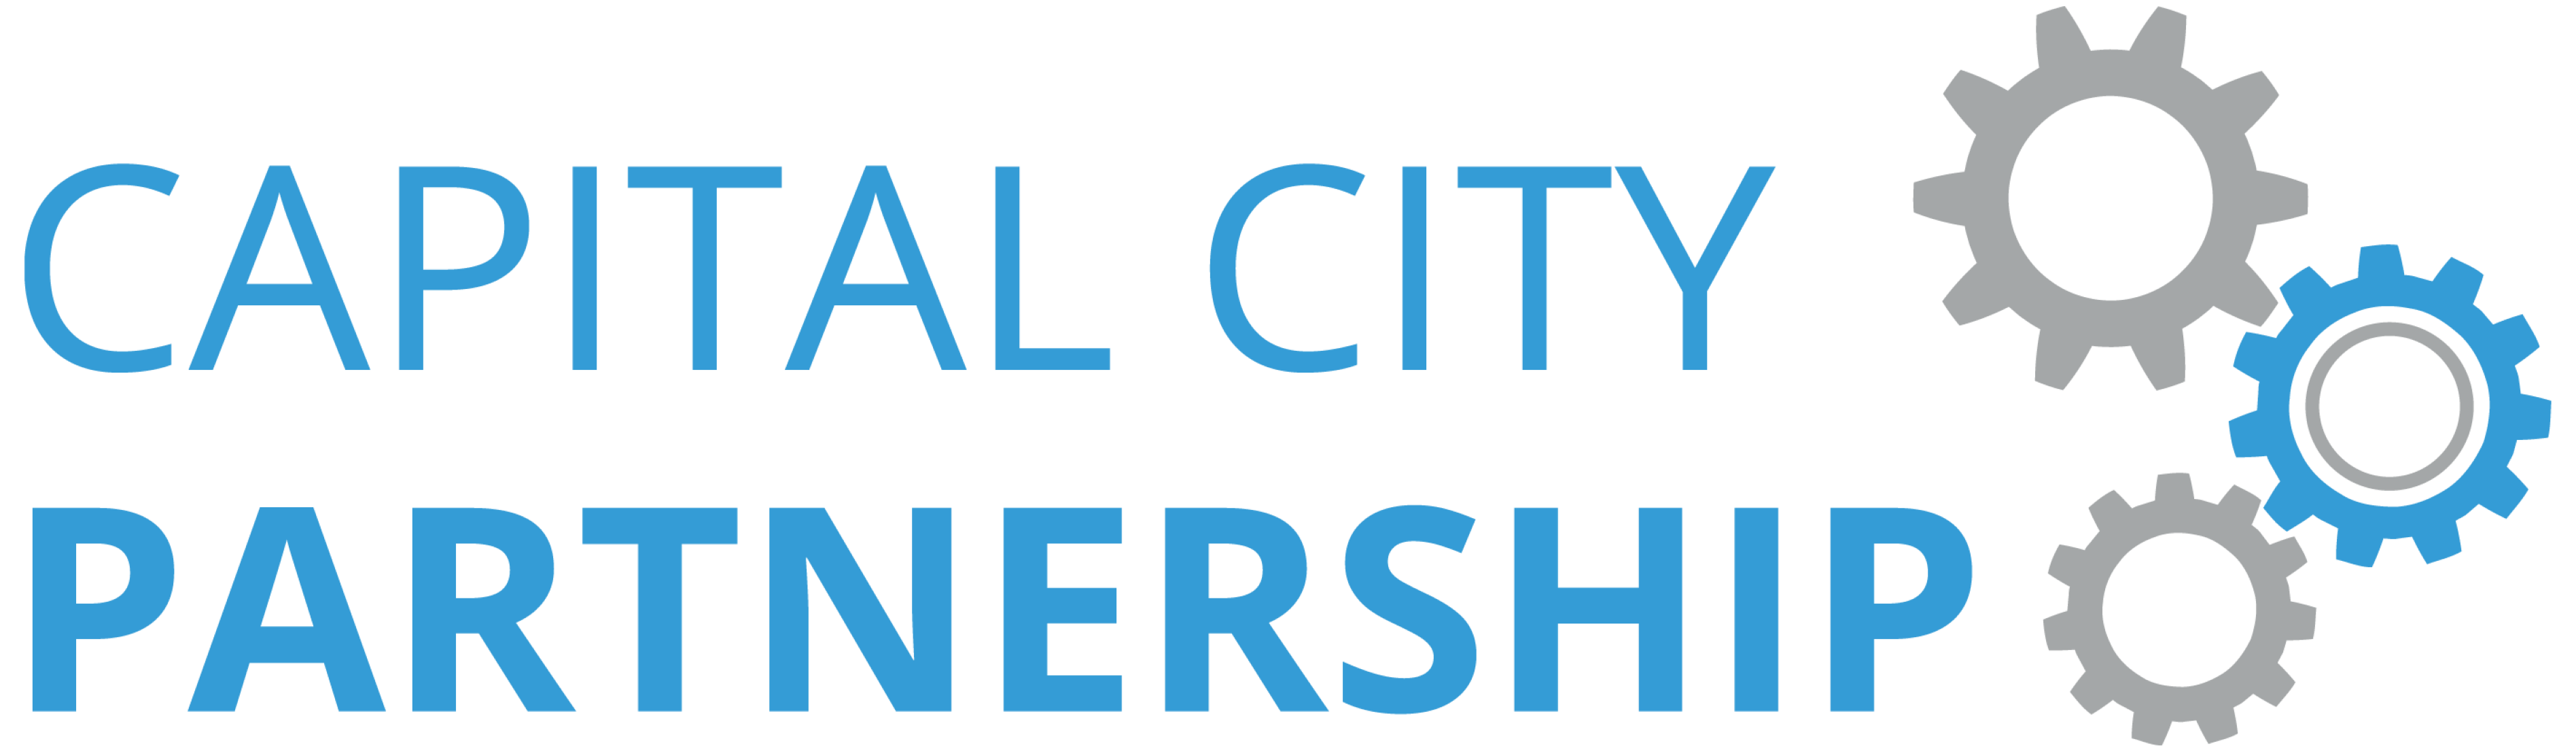 logo for Capital City Partnership